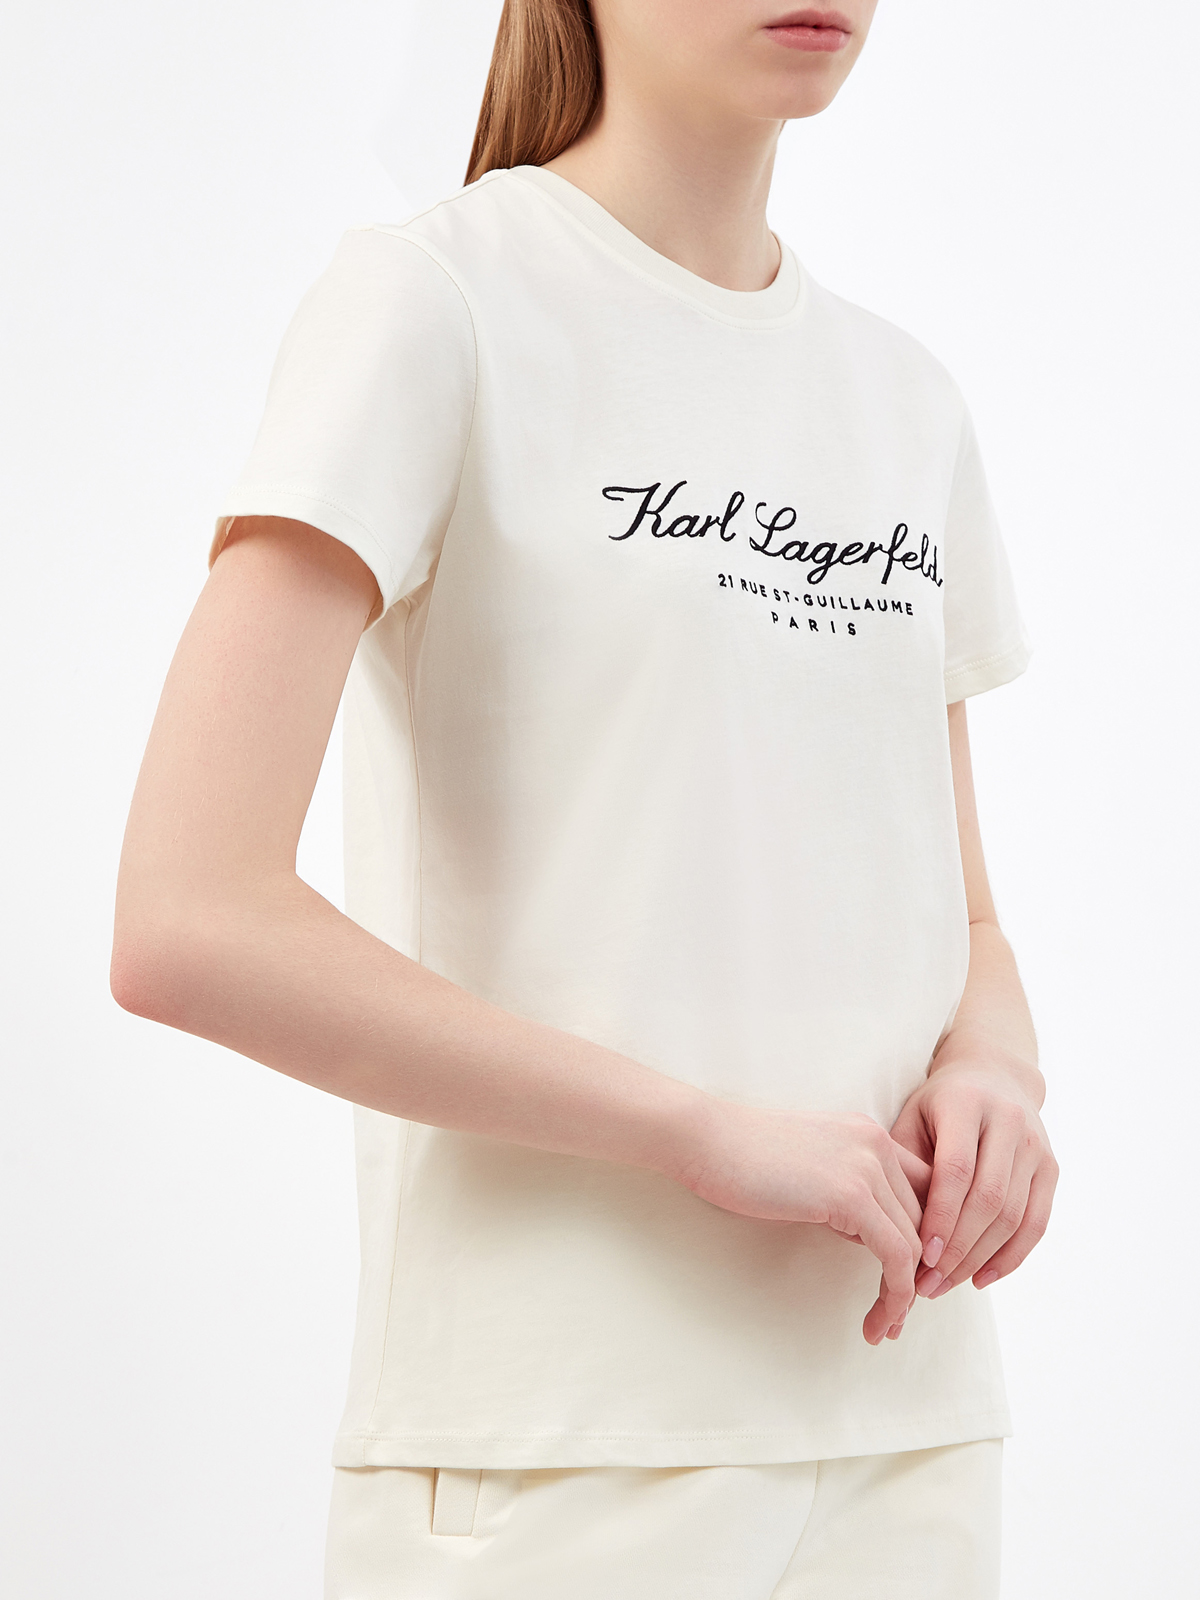 Хлопковая футболка из коллекции Hotel KARL KARL LAGERFELD, цвет бежевый, размер XS;M;L;S - фото 3